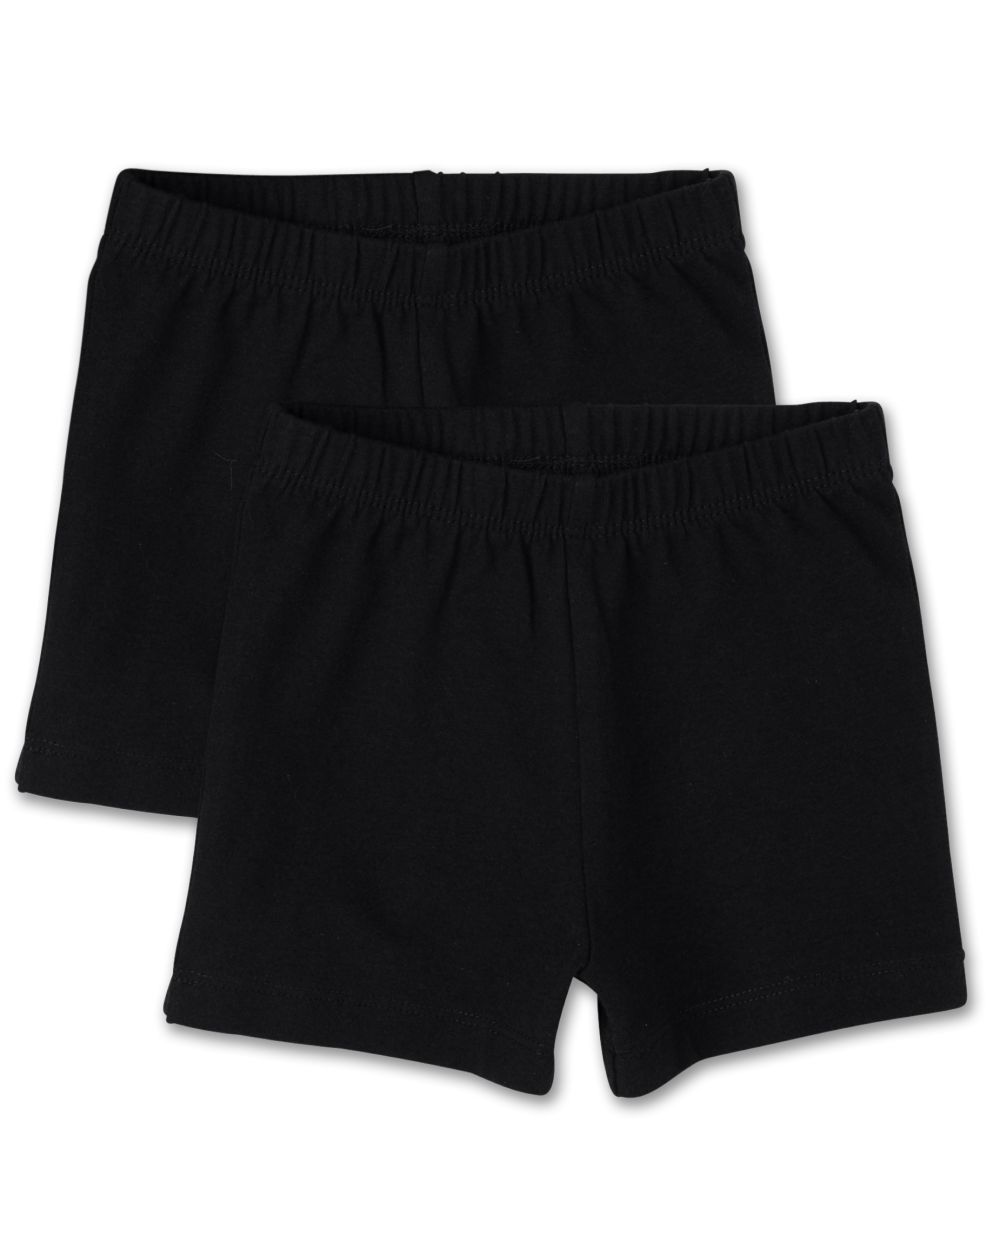 Toddler Girls Uniform Knit Cartwheel Shorts